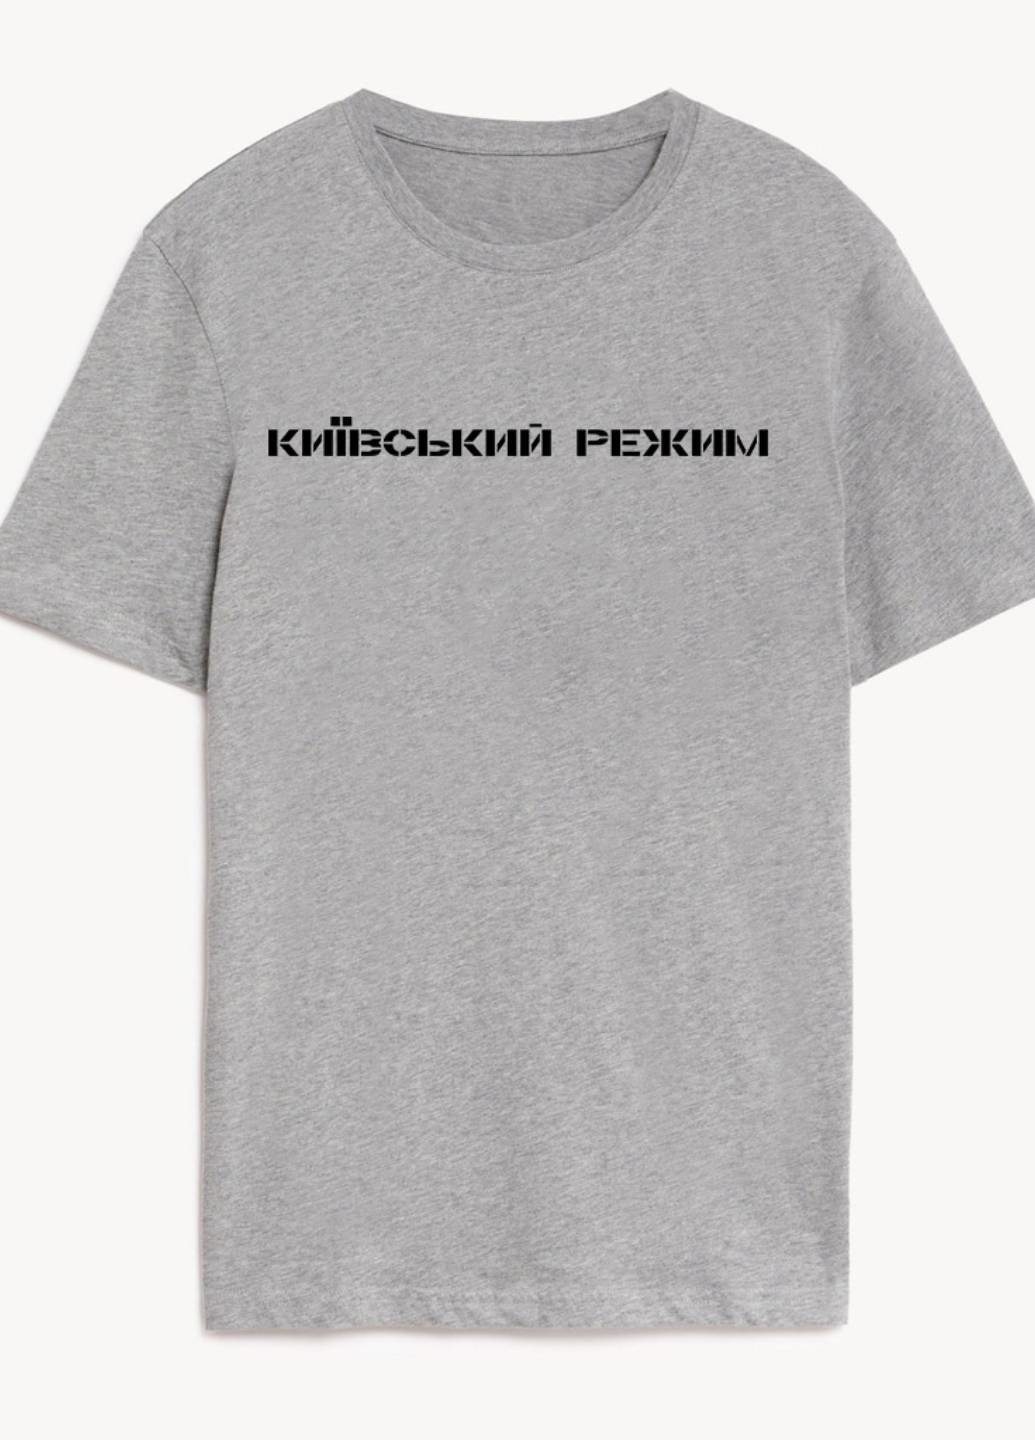 Сіра демісезон футболка жіноча сіра київський режим Love&Live